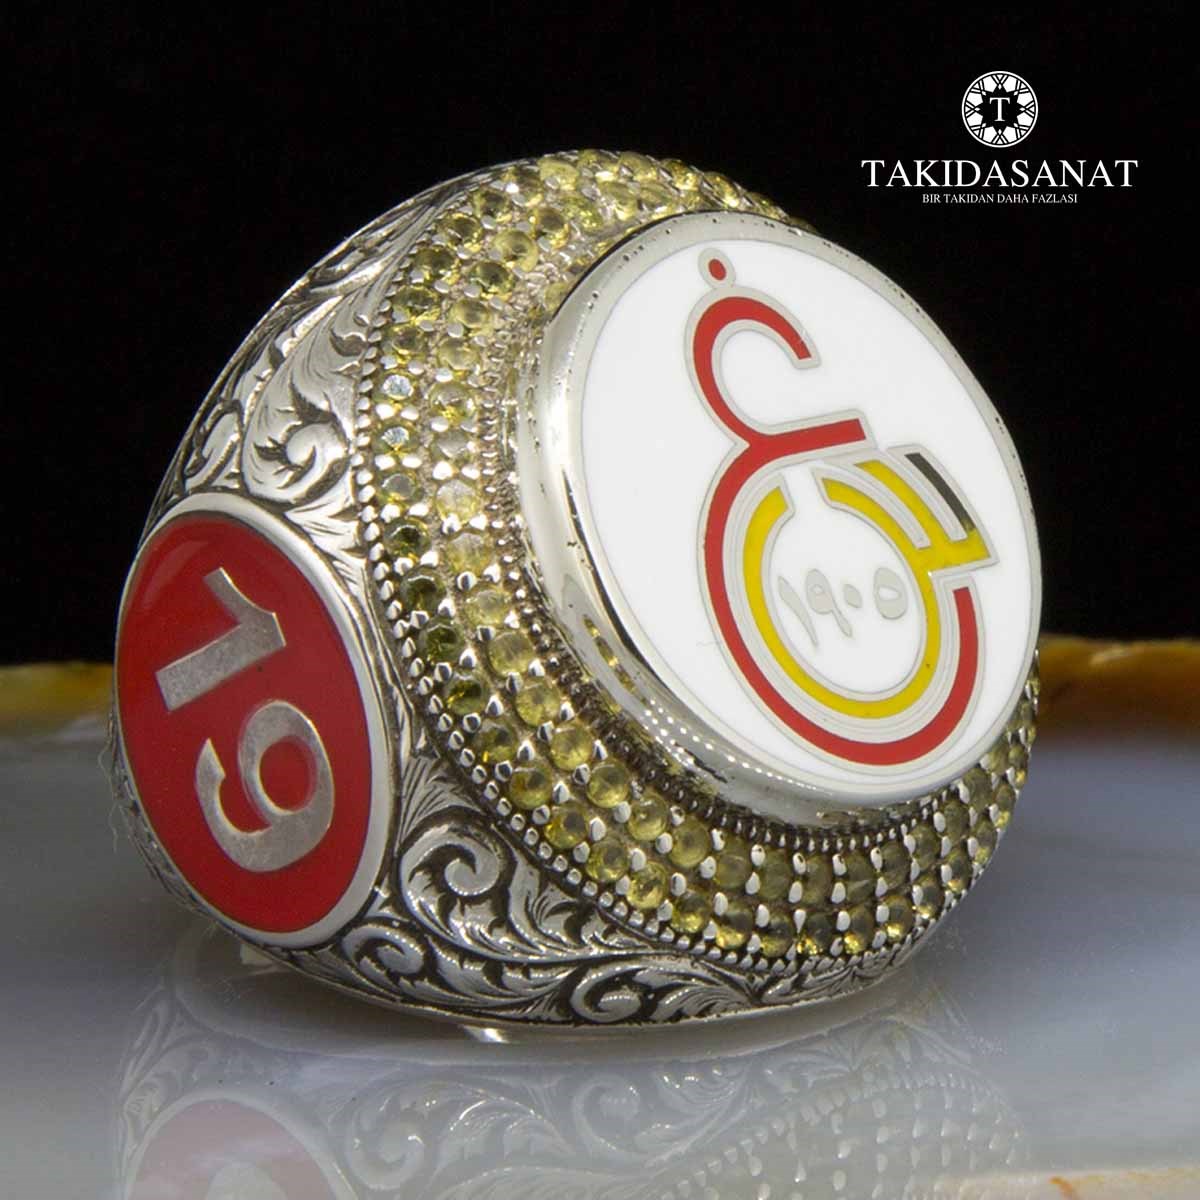 Orjinal "GS" Logolu Çok Özel Gümüş Saltanat Yüzüğü - Takıda Sanat